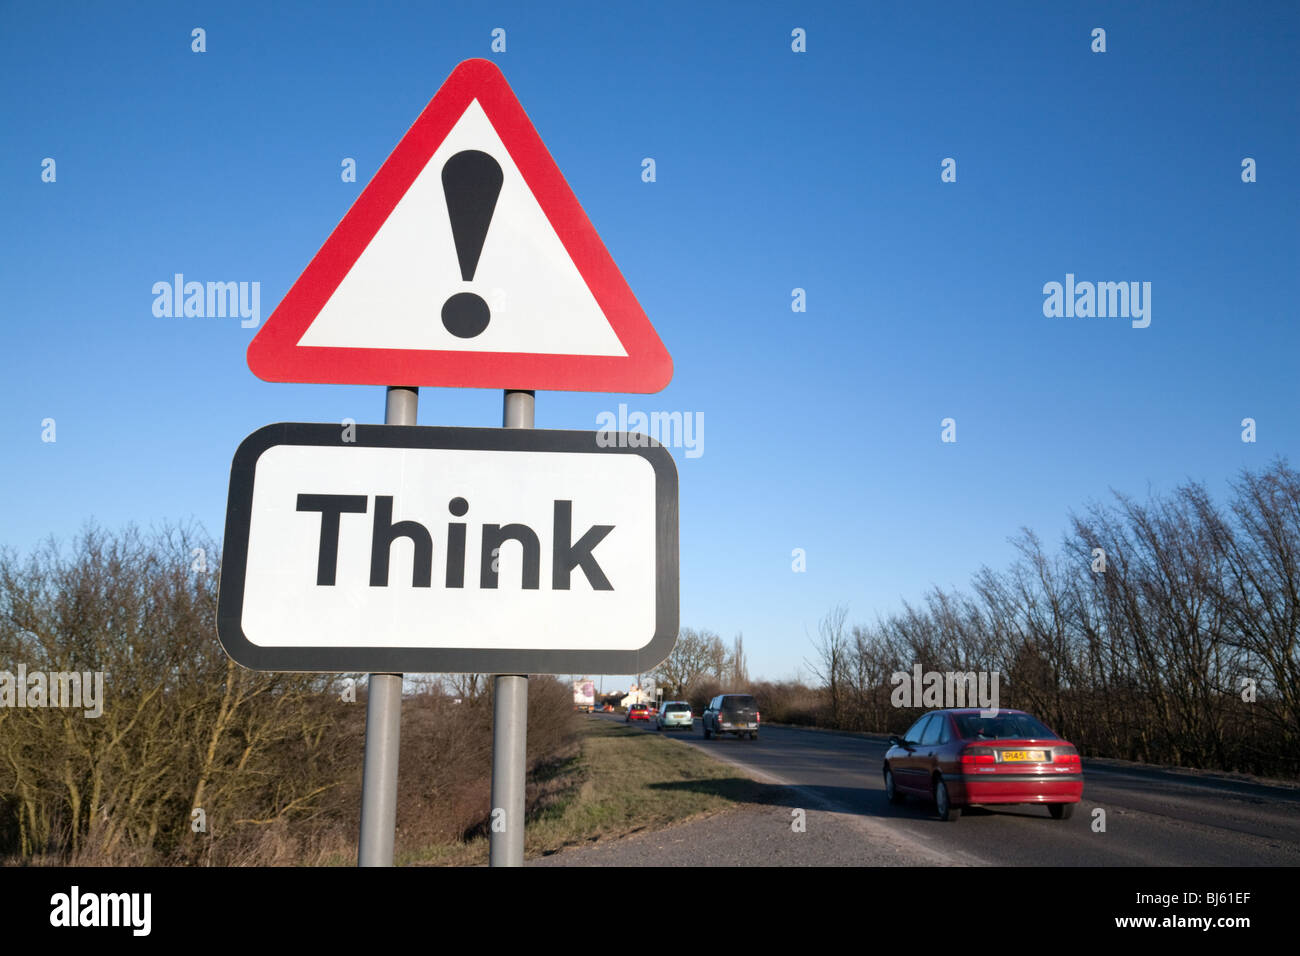 Think! road sign, Cambridgeshire UK Stock Photo